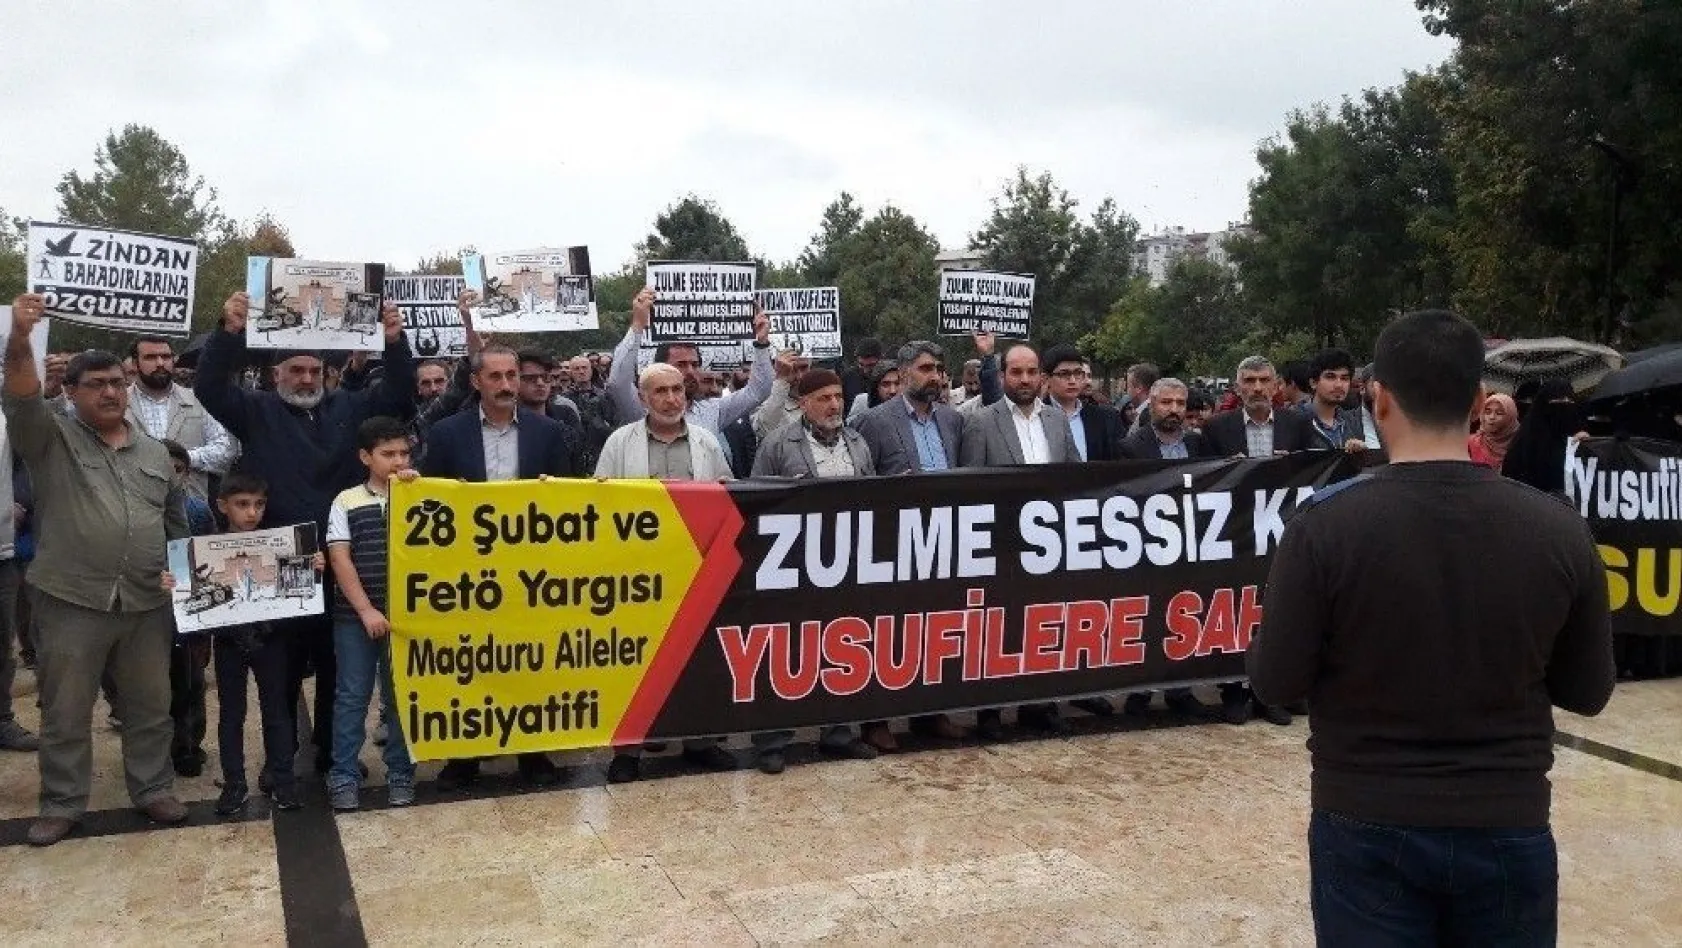 Diyarbakır'da 28 Şubat ve FETÖ yargısı mağdurları adalet talep etti
